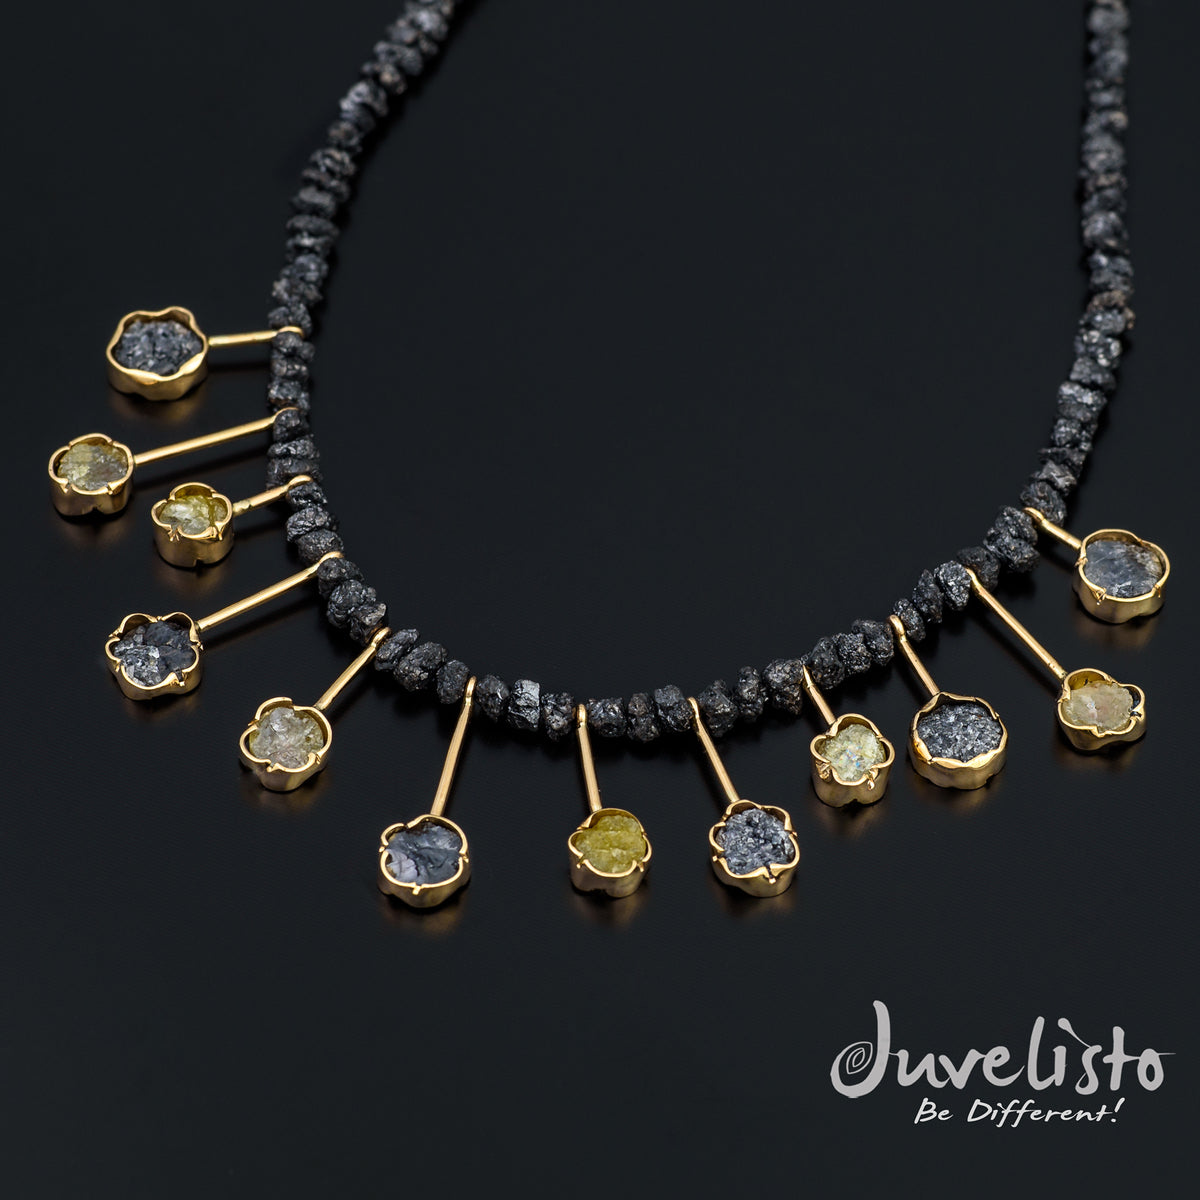 Juvelisto Design  Necklace of Raw Diamonds12 Multi Colored Druzy Diamonds 14K YG